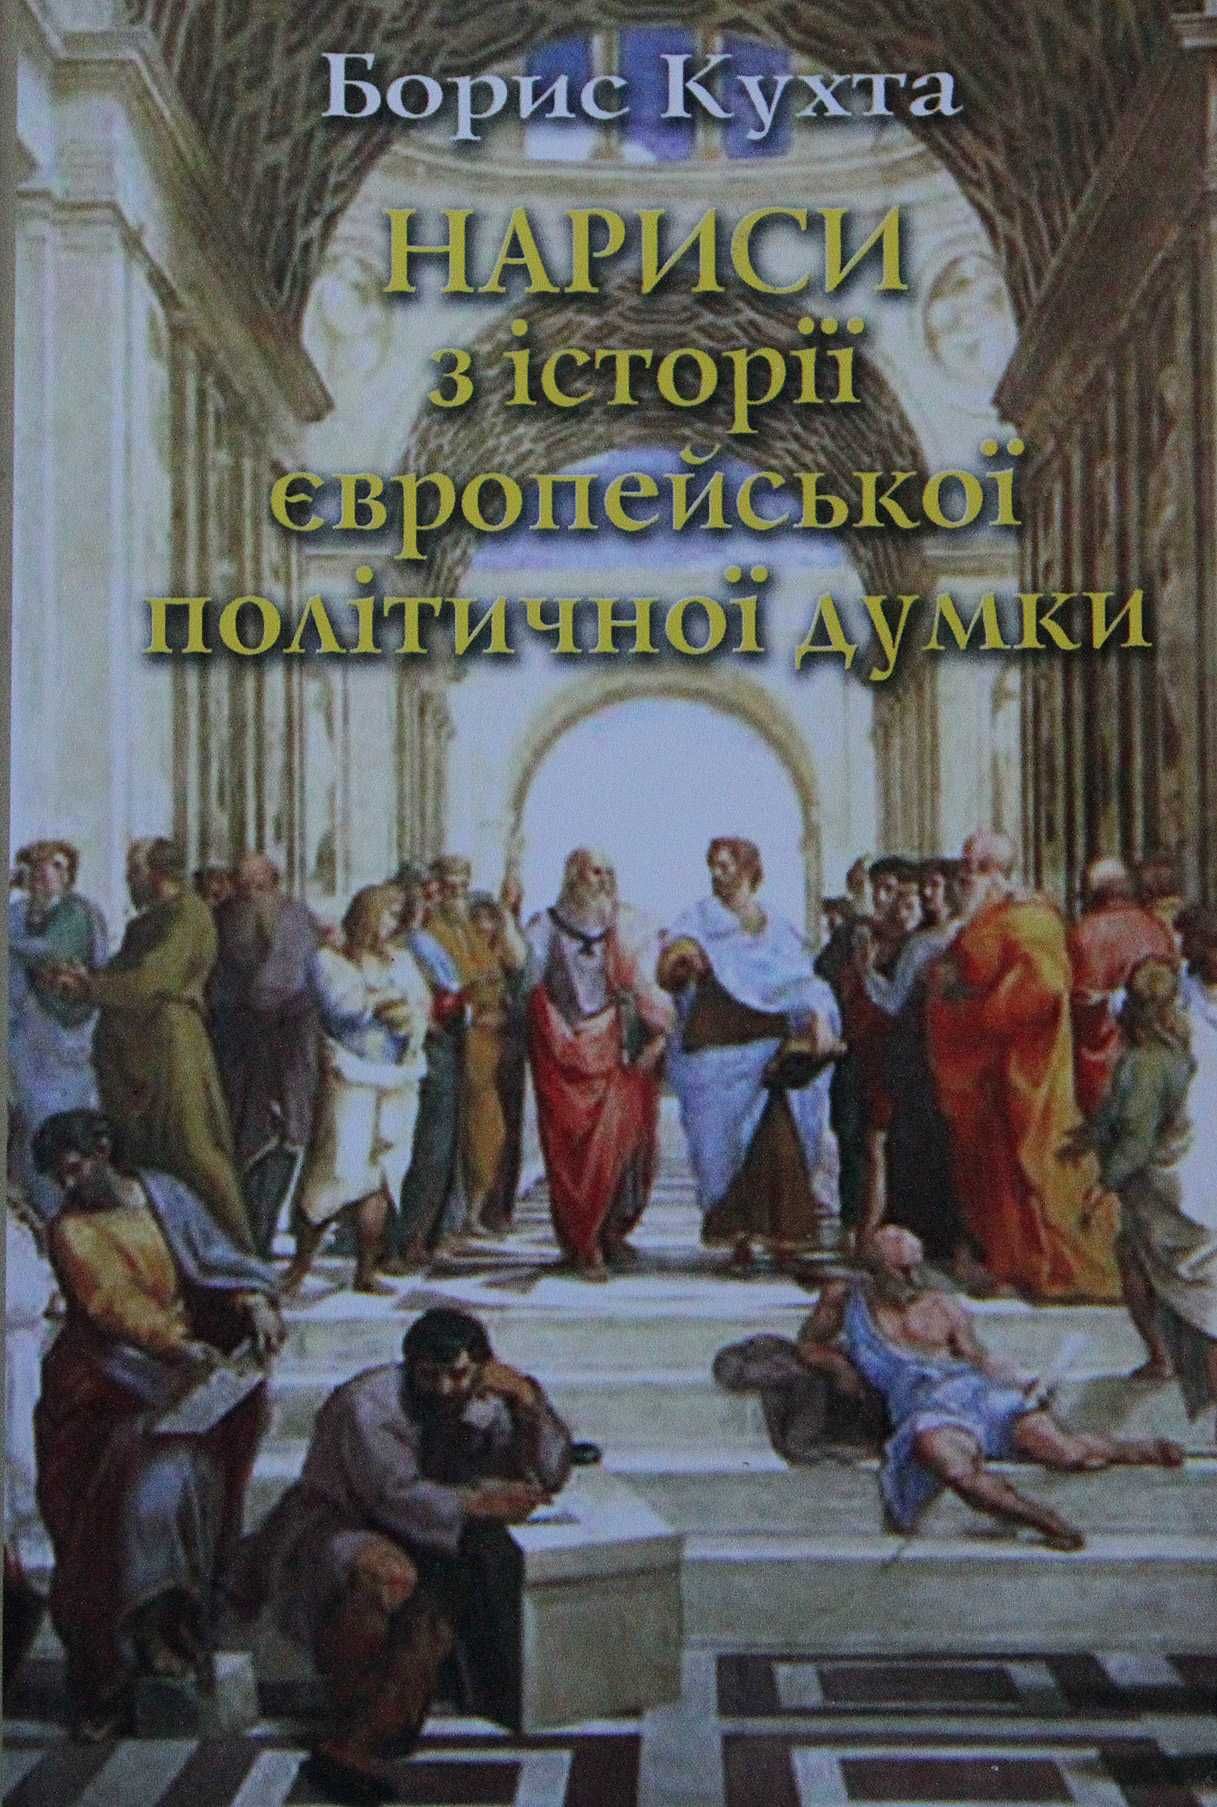 Книга Борис Кухта Нариси з історії європейської політичної думки.